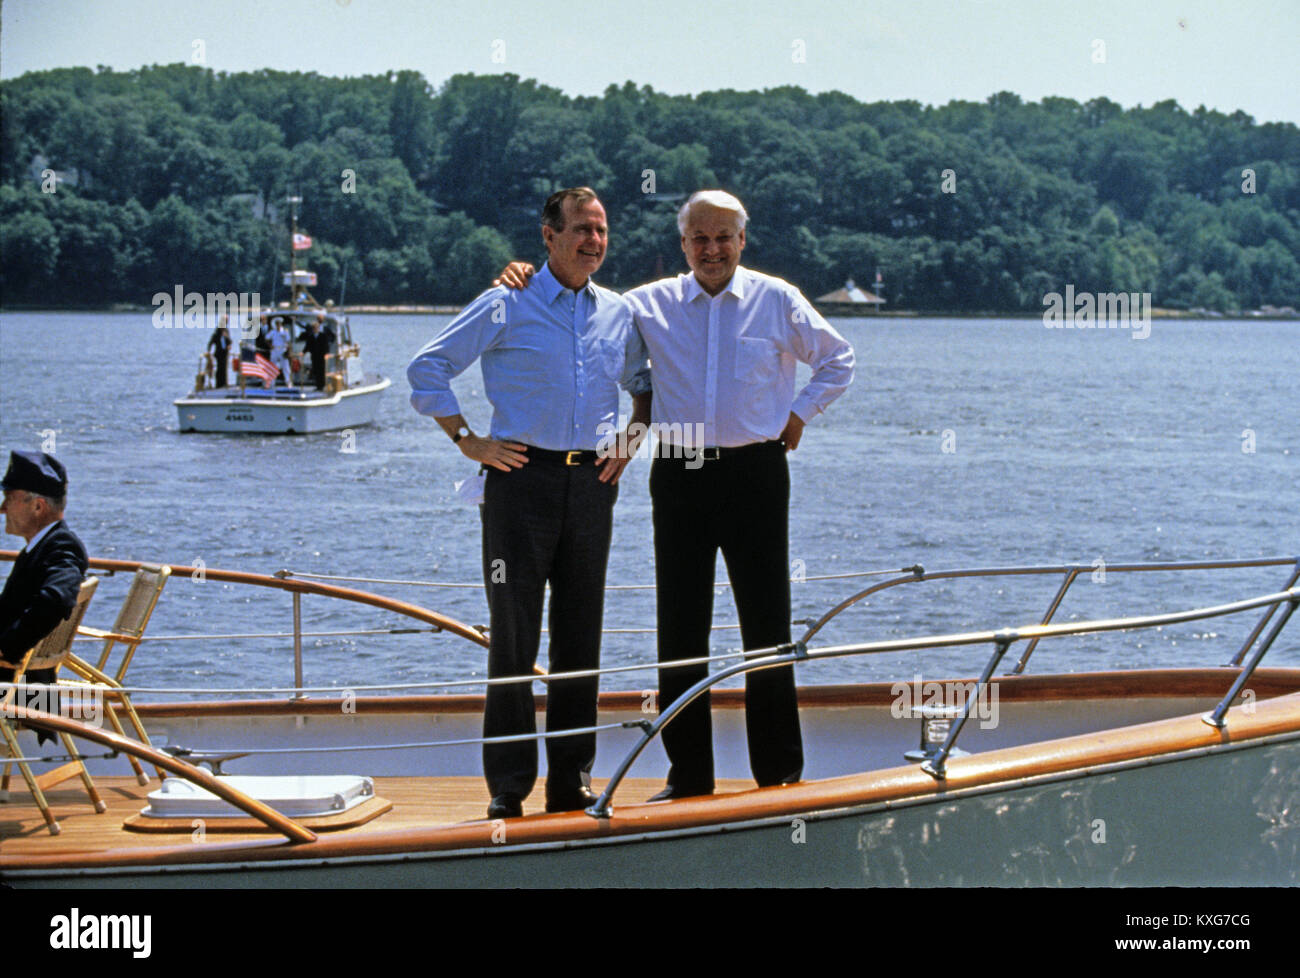 La rivière Severn, Maryland, USA. 17 Juin, 1992. Le président des États-Unis George H. W. Bush, à gauche, et le président Boris Eltsine, de la Fédération de Russie, à droite, sur le pont comme ils prennent un tour en bateau sur la rivière Severn dans le Maryland le 17 juin 1992. Credit : Ron Sachs/CNP Crédit : Dennis Brack/CNP/ZUMA/Alamy Fil Live News Banque D'Images